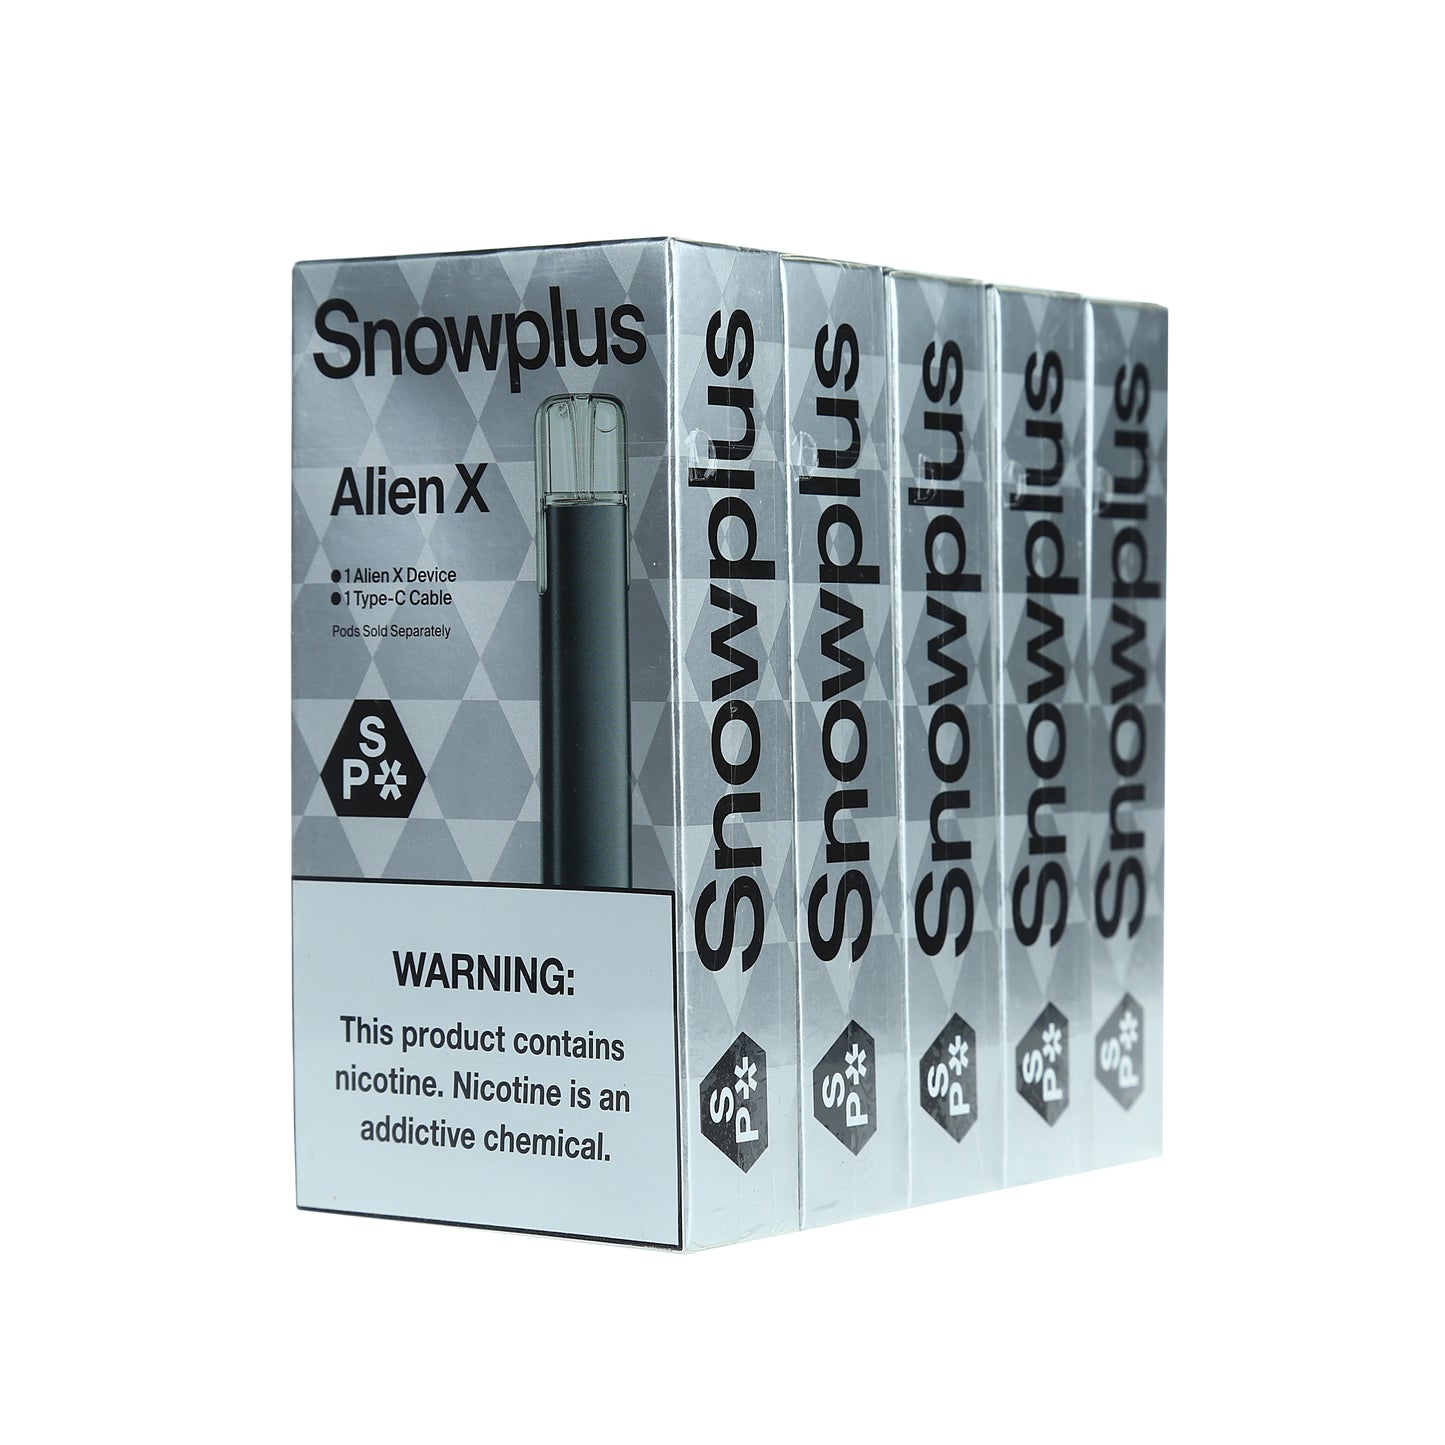 Snowplus Alien X Device Box of 5 - Multiple Colors